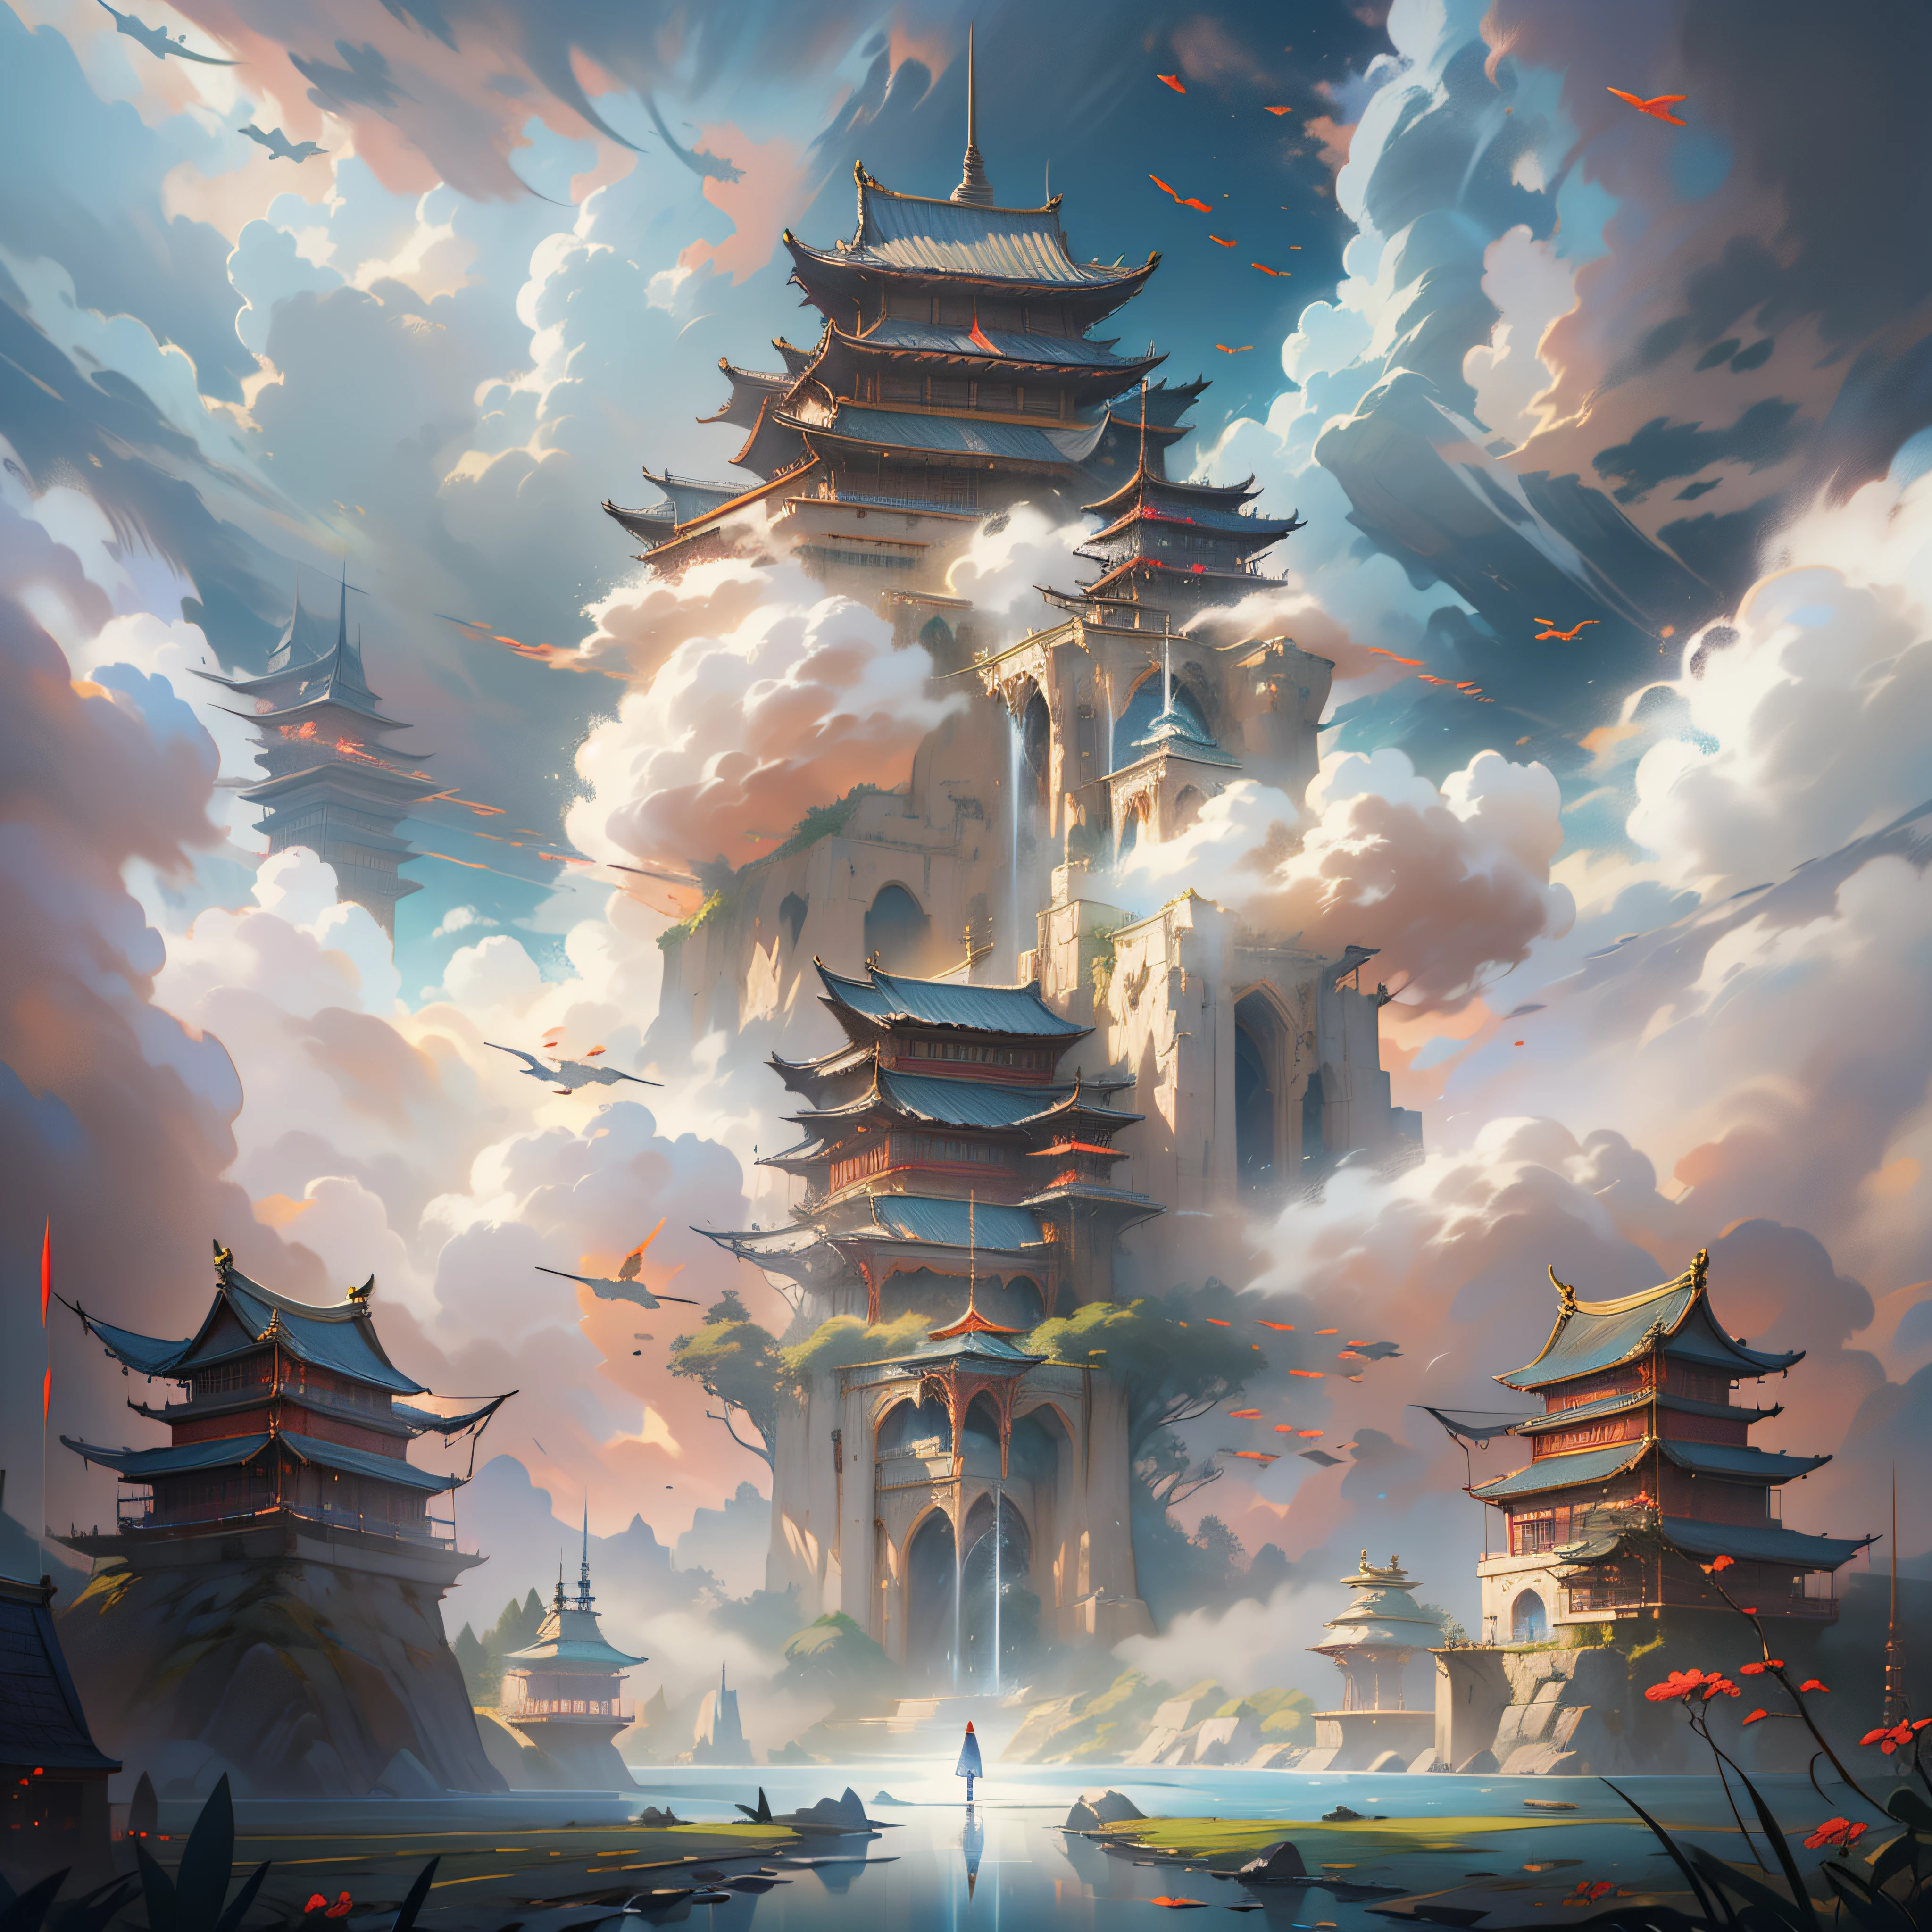 有一张云层中高楼的图片, 天堂之门, 精心设计的哑光绘画, 云宫, 漂浮在天上的宫殿, 进入以太境界, 奢华的哑光绘画, 天堂之门, 精致的哑光绘画, 中国超现实主义, 戏剧性的进入, 作者：Cheng Jiasui, 阮建, 作者：朱利安, 中国奇幻, 宏伟的哑光绘画、光从背后照射